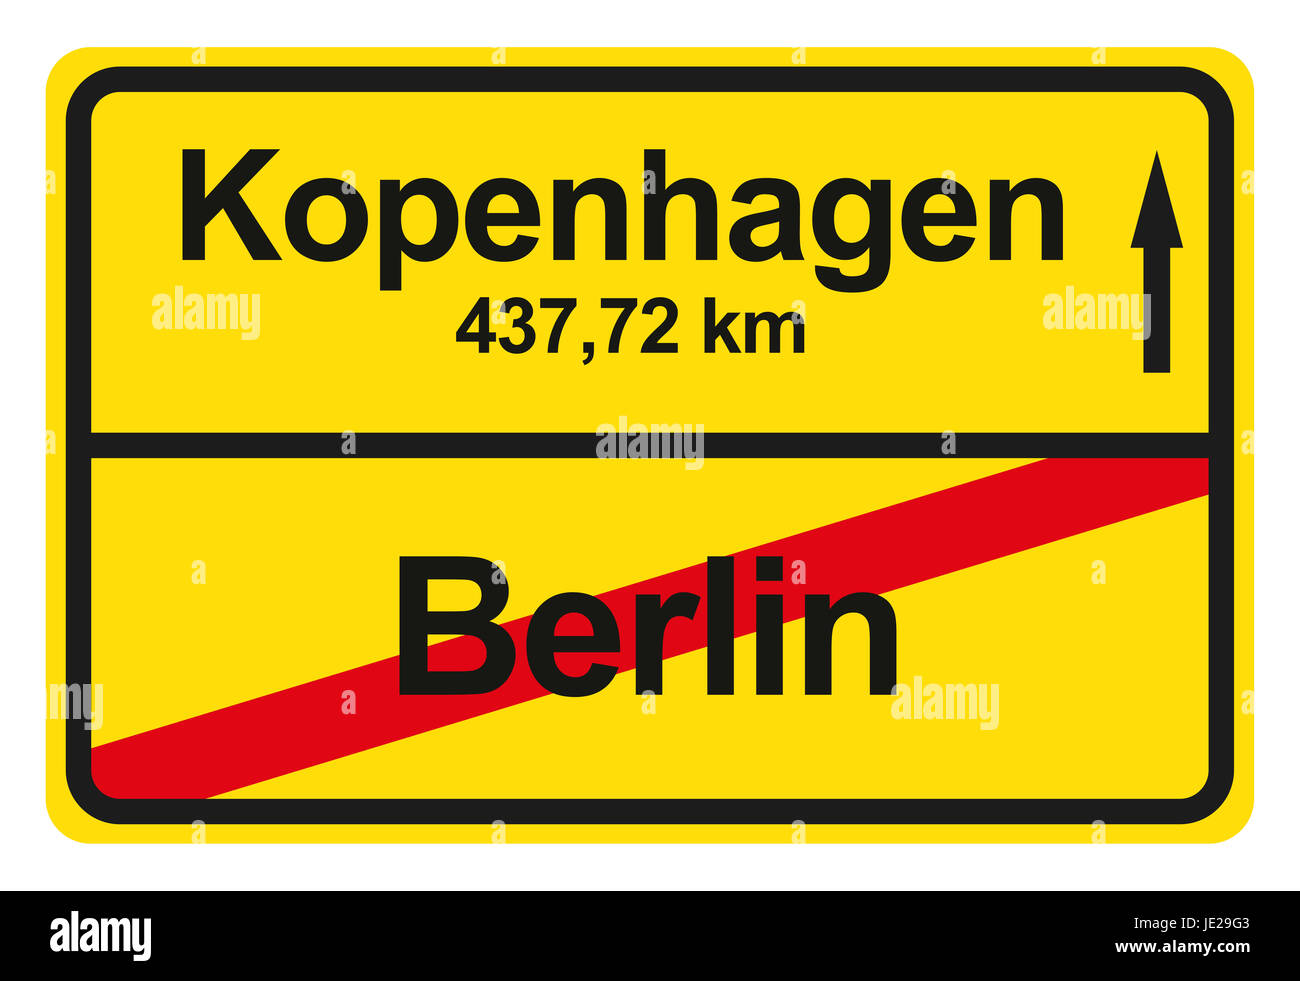 Ein gelbes Ortsausgangschild mit der jeweiligen Entfernung von einem Ort zum anderen. Stock Photo